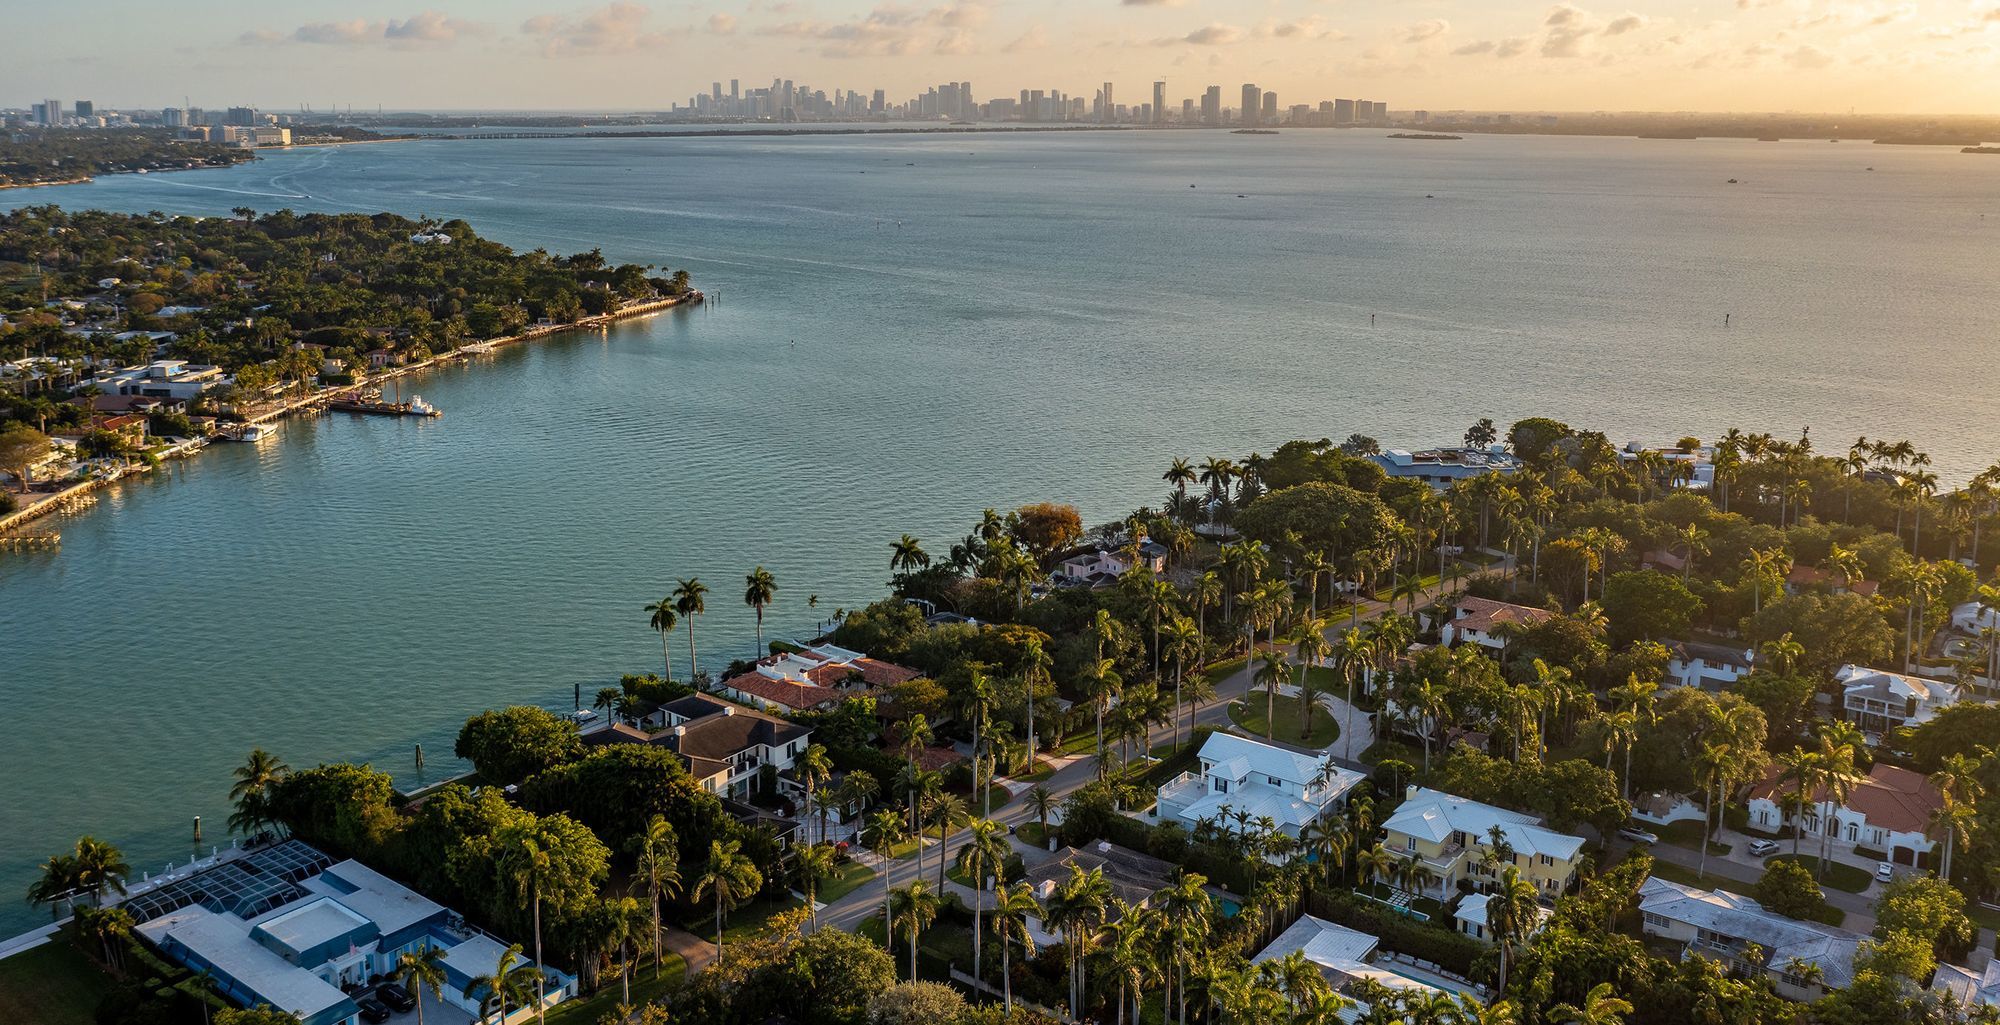 La exclusiva propiedad está ubicada en La Gorce Island conectada por un puente a Miami Beach con una vista de 182 metros abiertos frente al mar. Cada una de las tres construcciones cuentan con su propio muelle con capacidad para alojar un barco de grandes dimensiones.